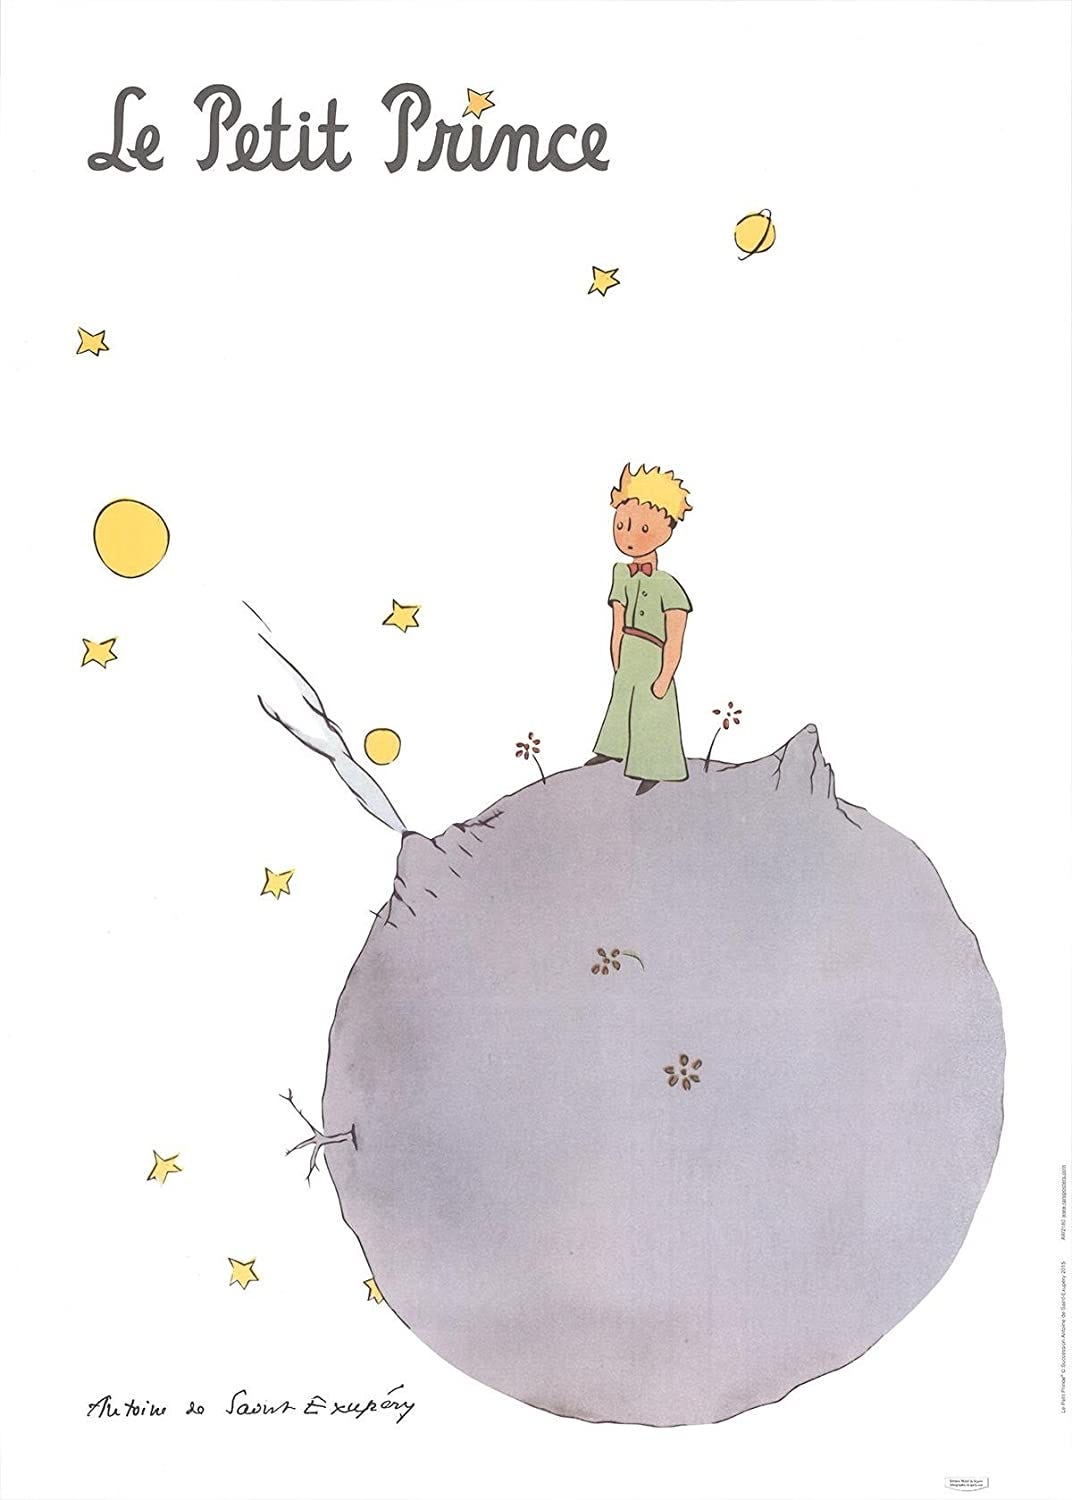 Semyon Der Arguchintsev The Little Prince